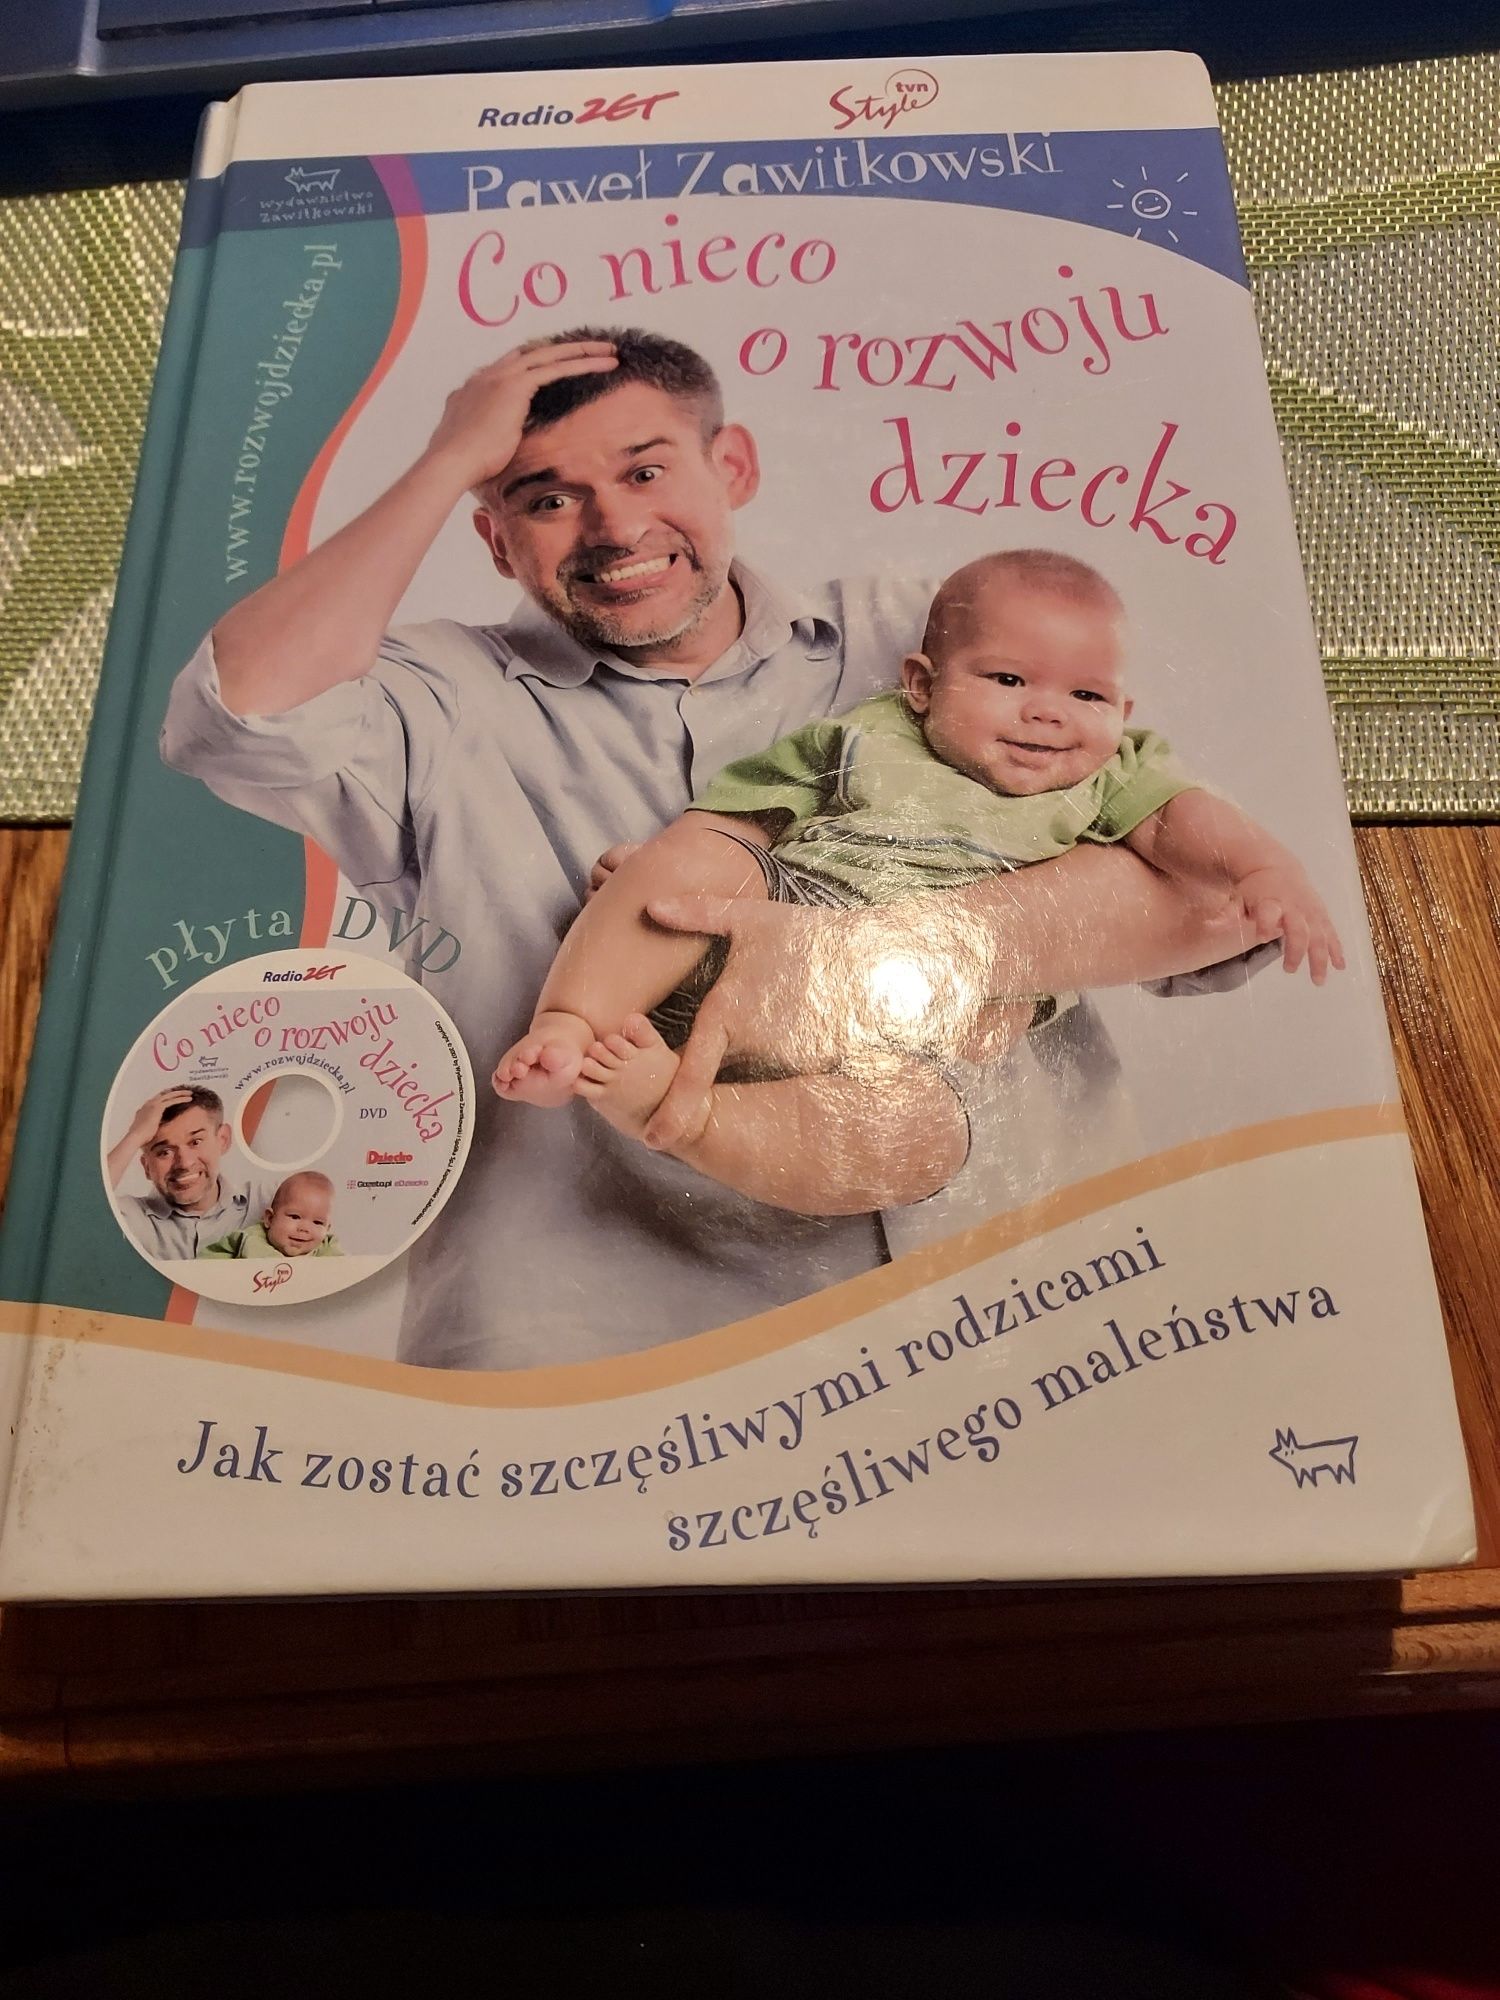 Co nieco o rozwoju dziecka - P. Zawitkowski